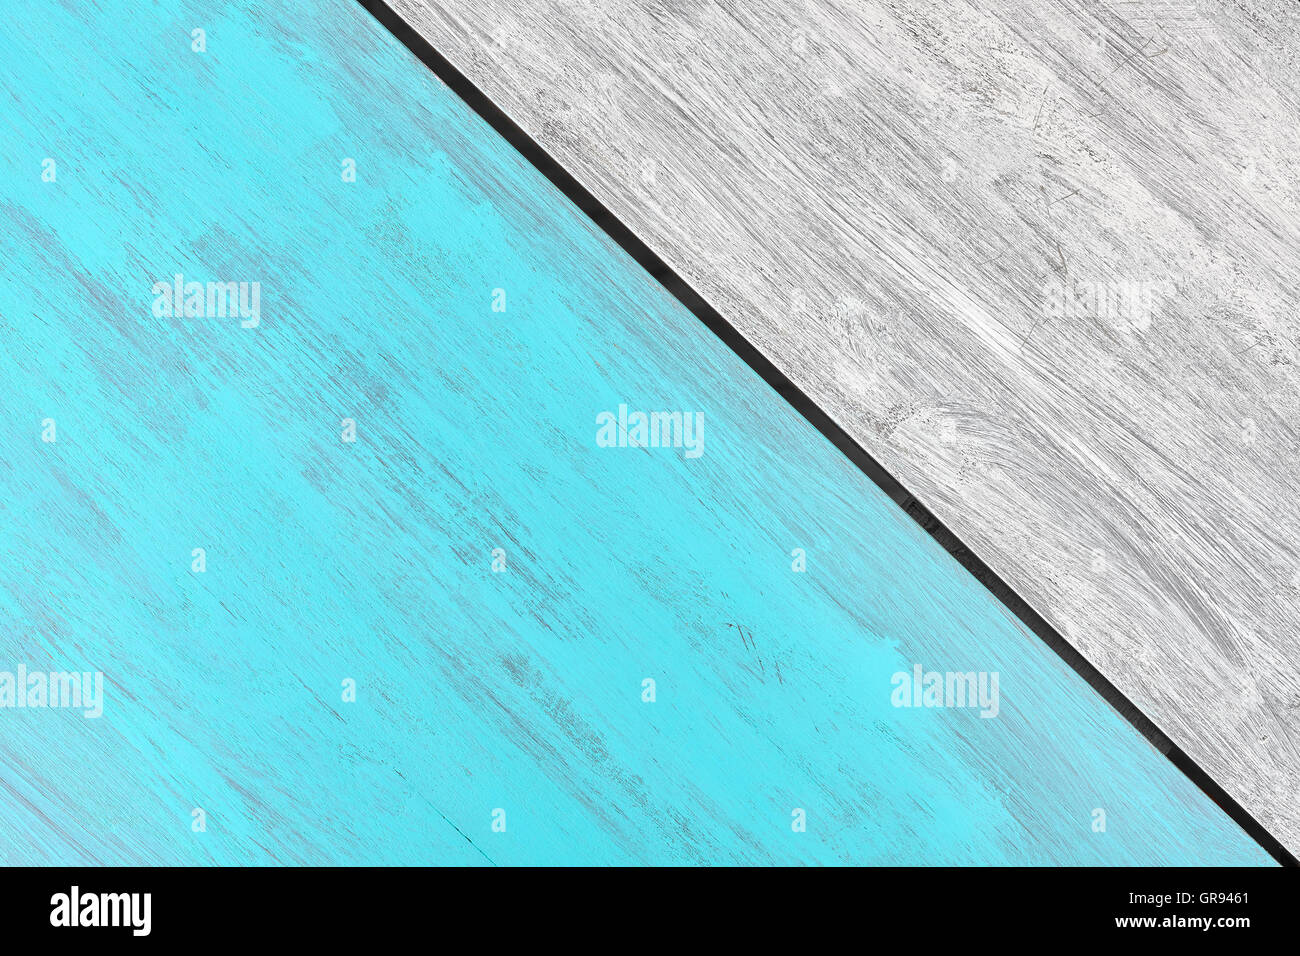 Rustico blu e bianco di legno verniciato tabella, vista da sopra, copia dello spazio. Foto Stock